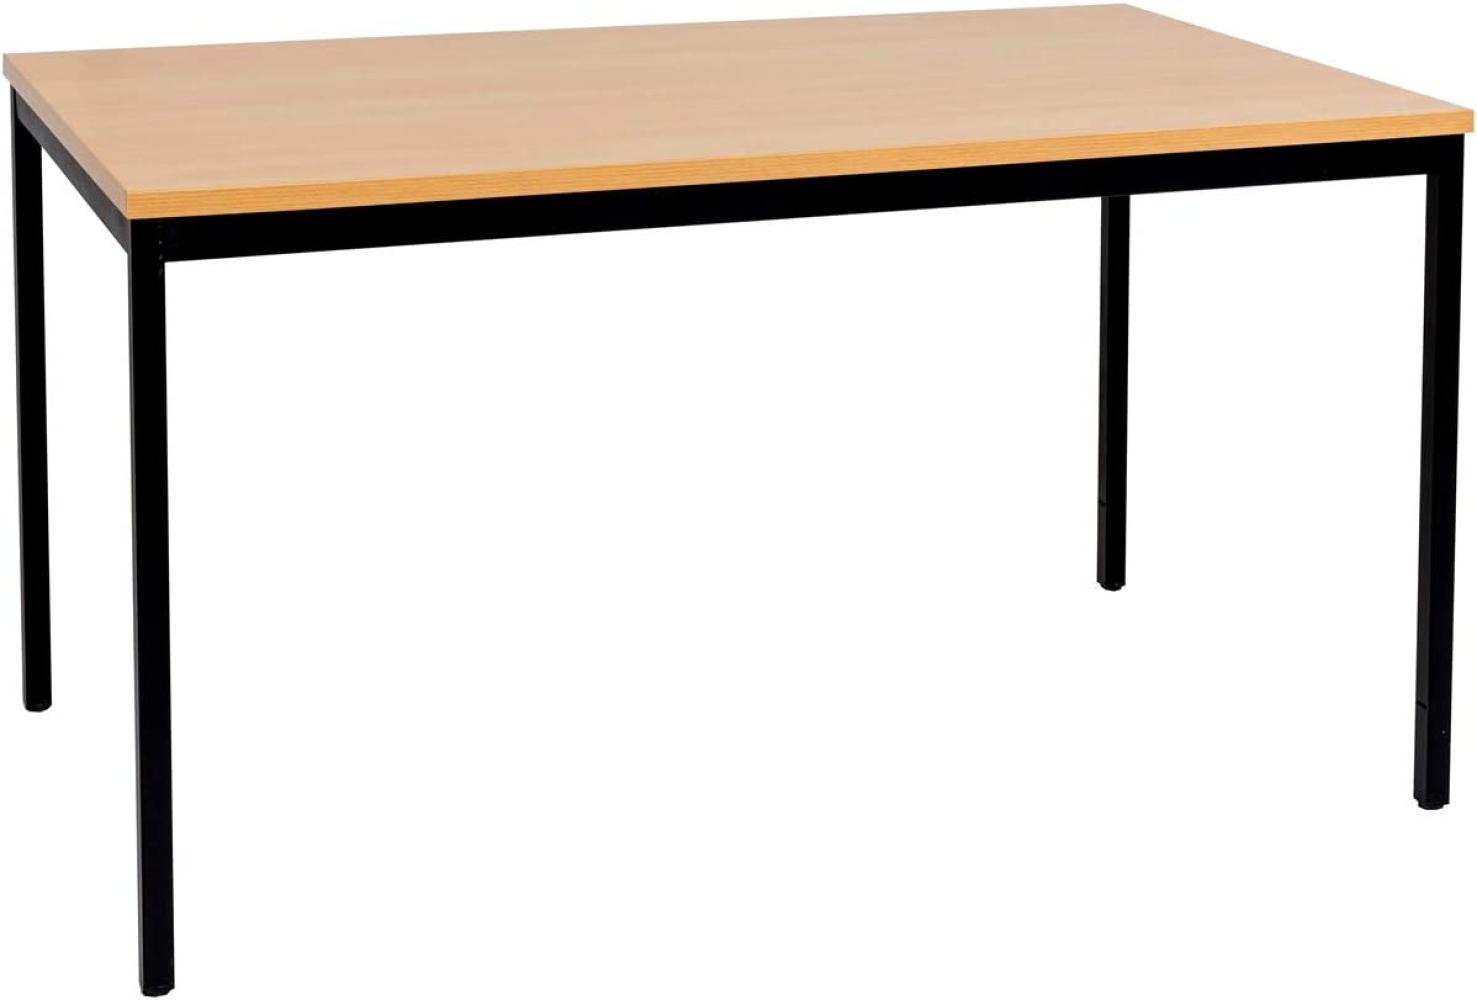 Furni24 Schreibtisch mit laminierter Platte, Metallgestell und verstellbaren Füßen, Buche, 120 x 60 x 75 cm Bild 1